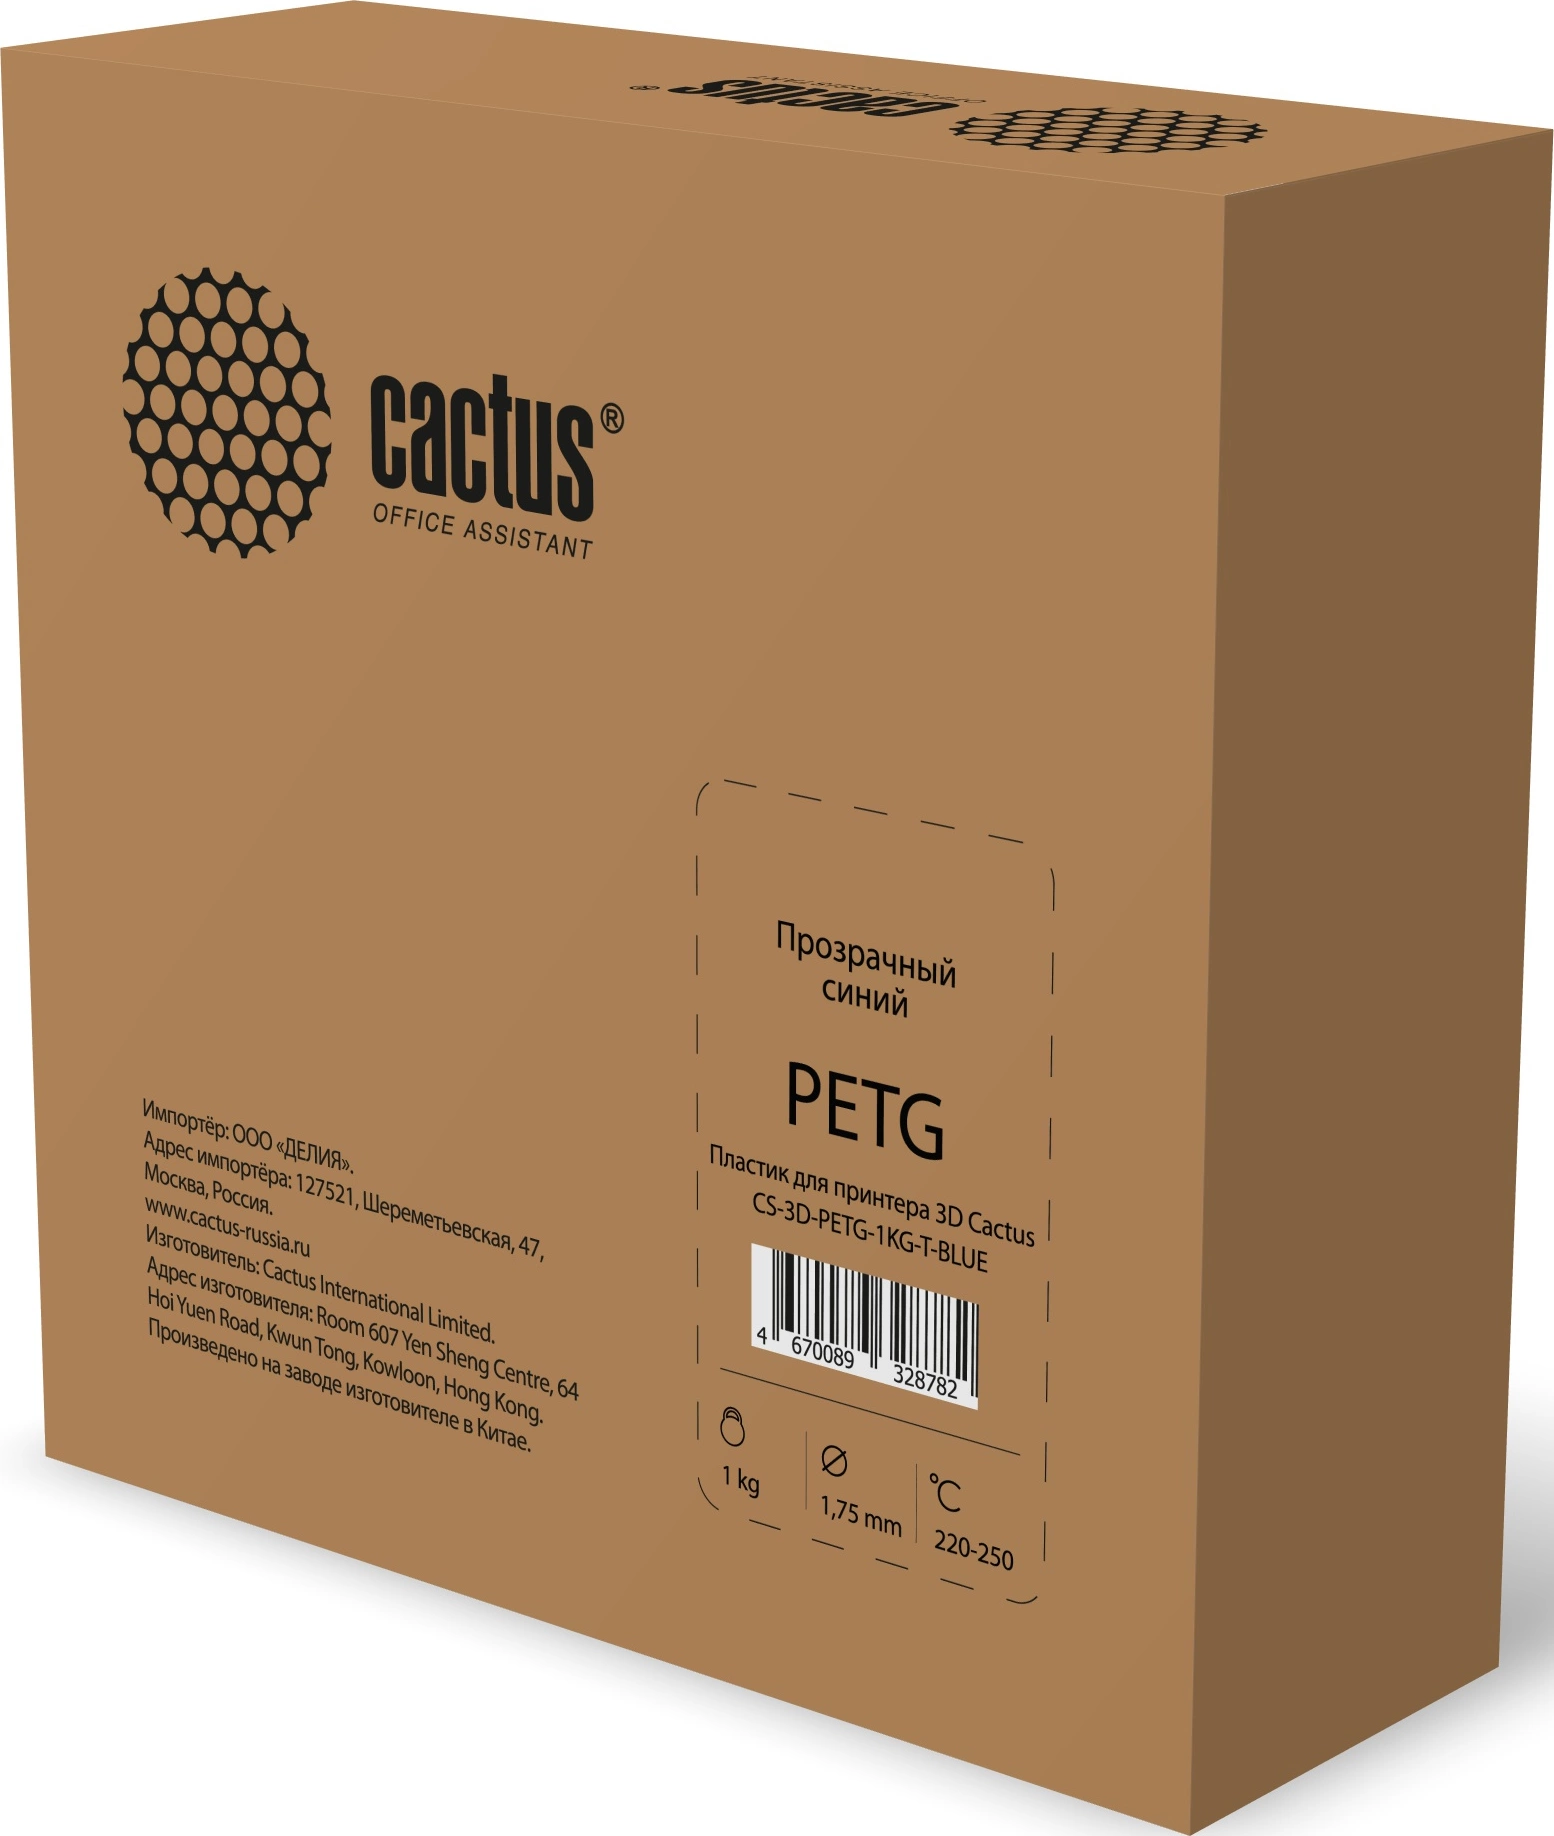 Пластик для принтера 3D Cactus CS-3D-PETG-1KG-T-BLUE PETG d1.75мм 1кг 1цв.